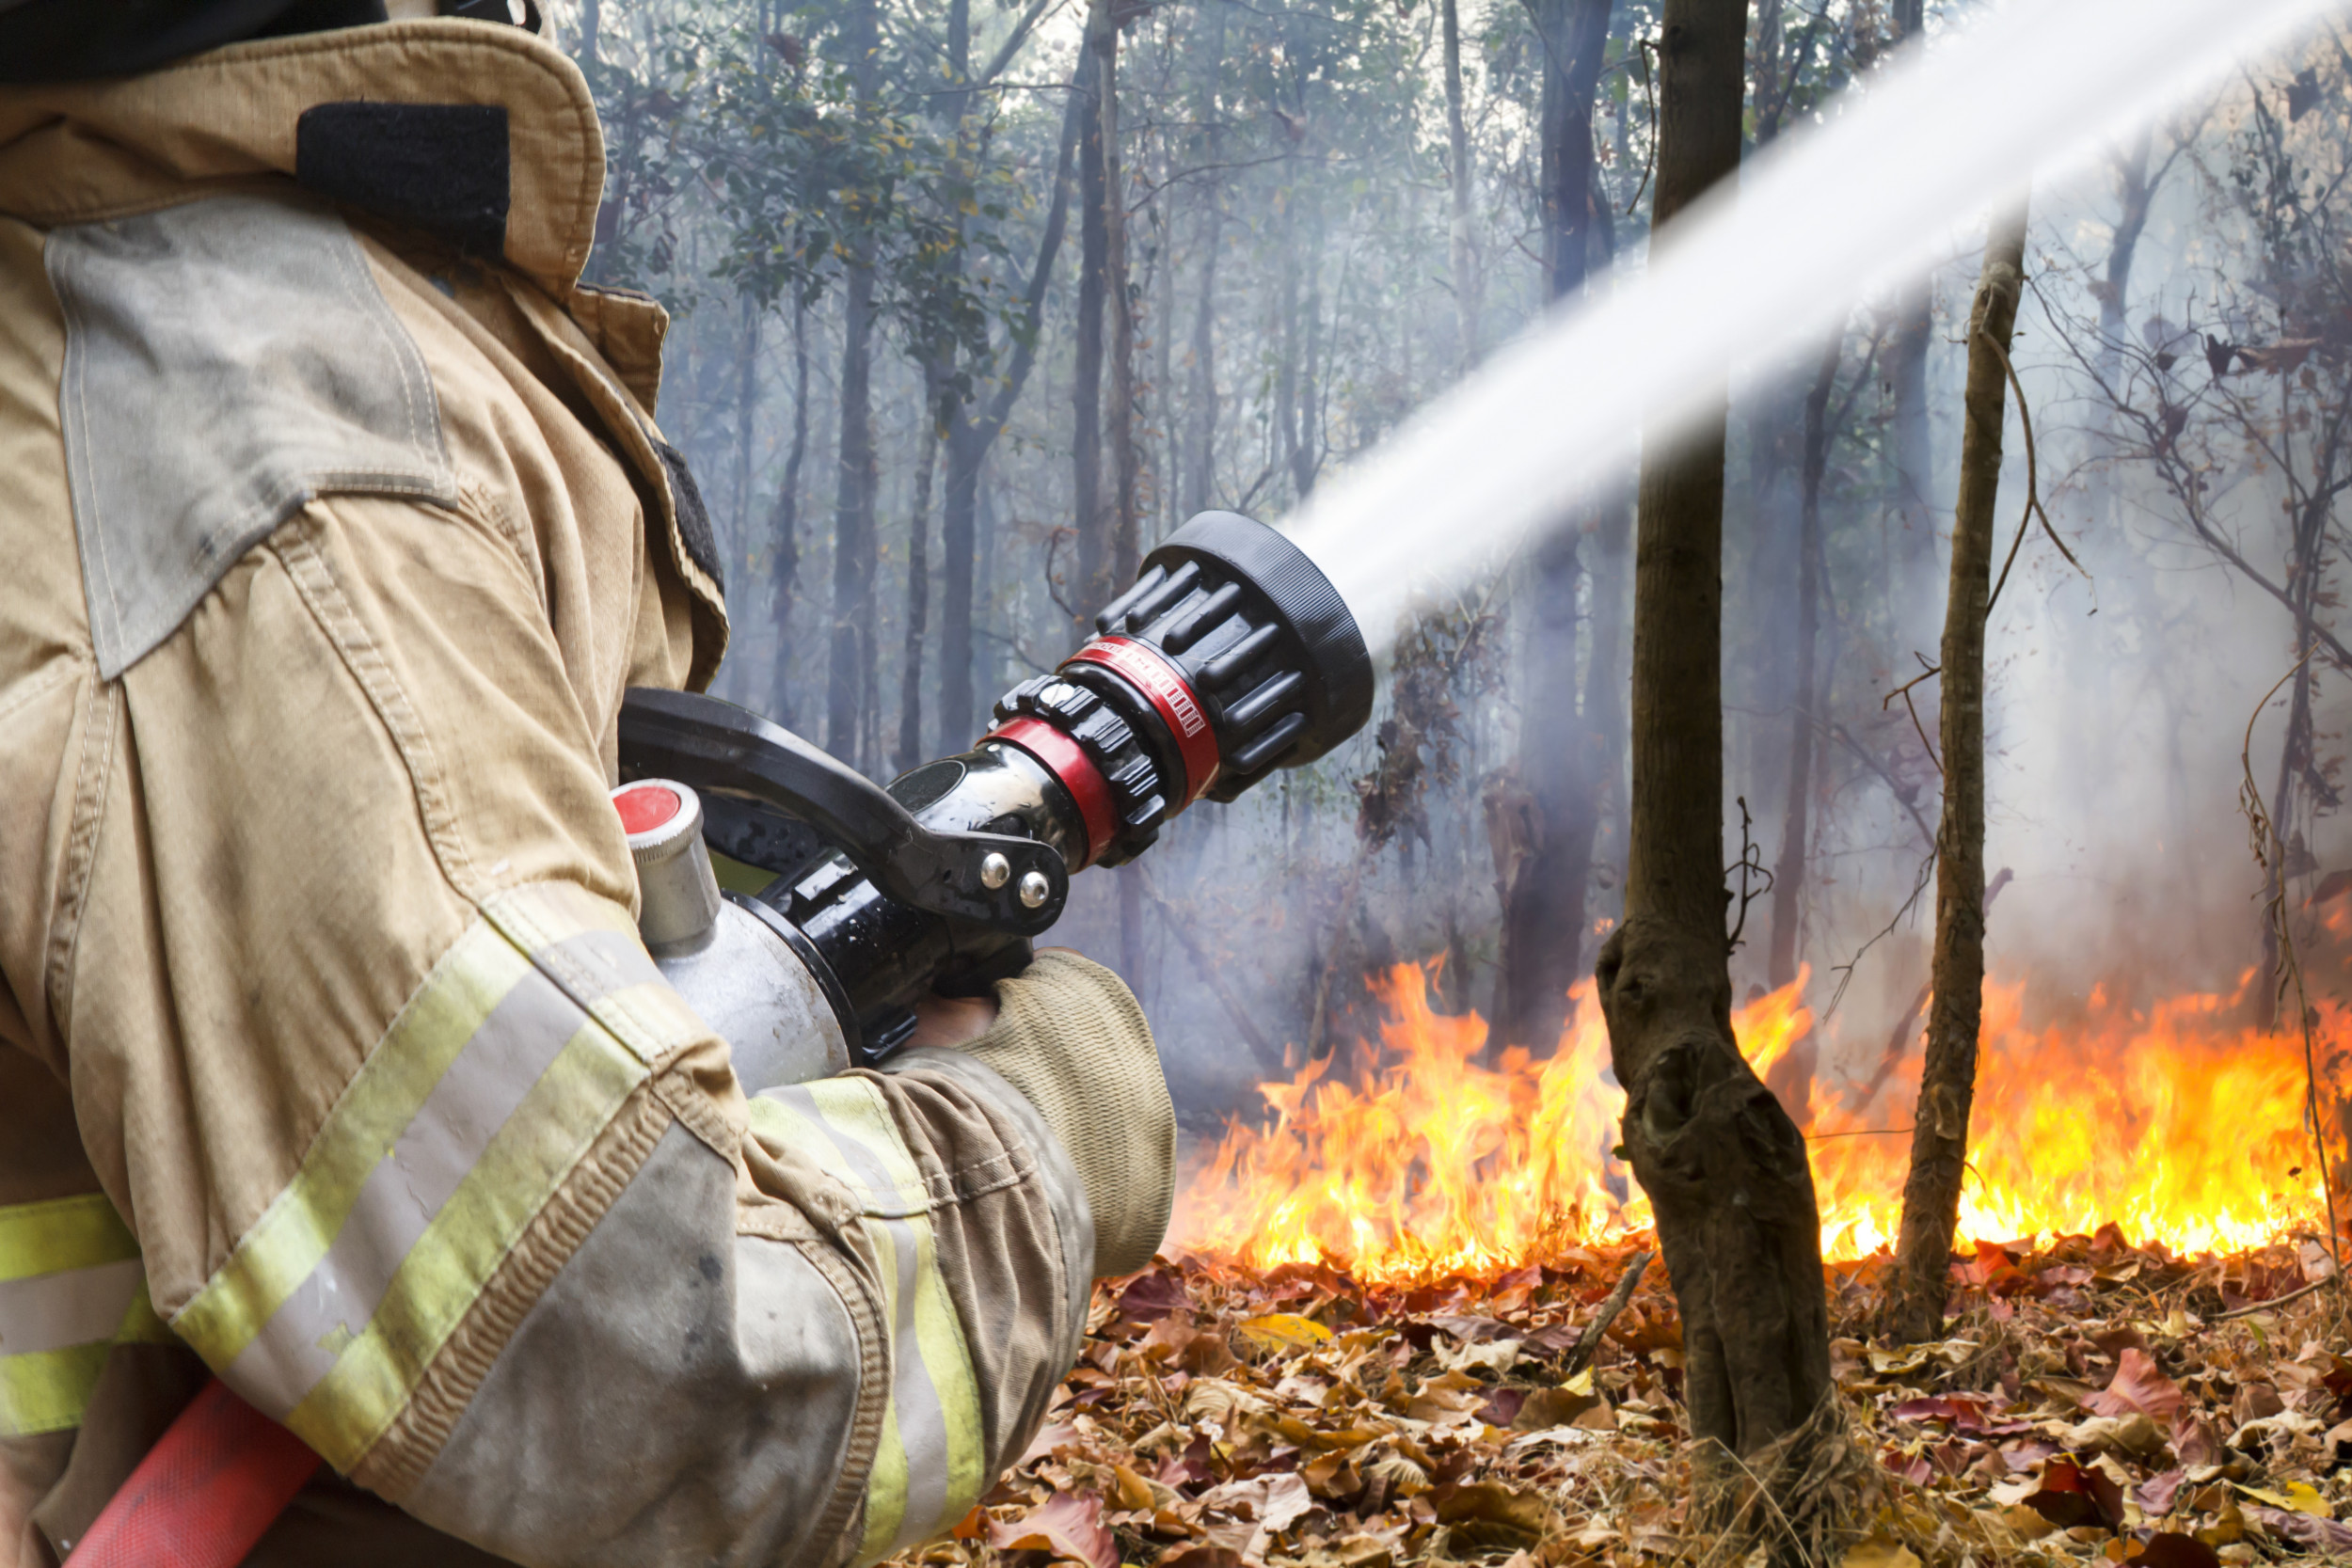 Повышенная пожароопасность. Тушение пожара в лесу. Пожарные тушат пожар в лесу. Противопожарный режим в лесу. Борьба с огнем.